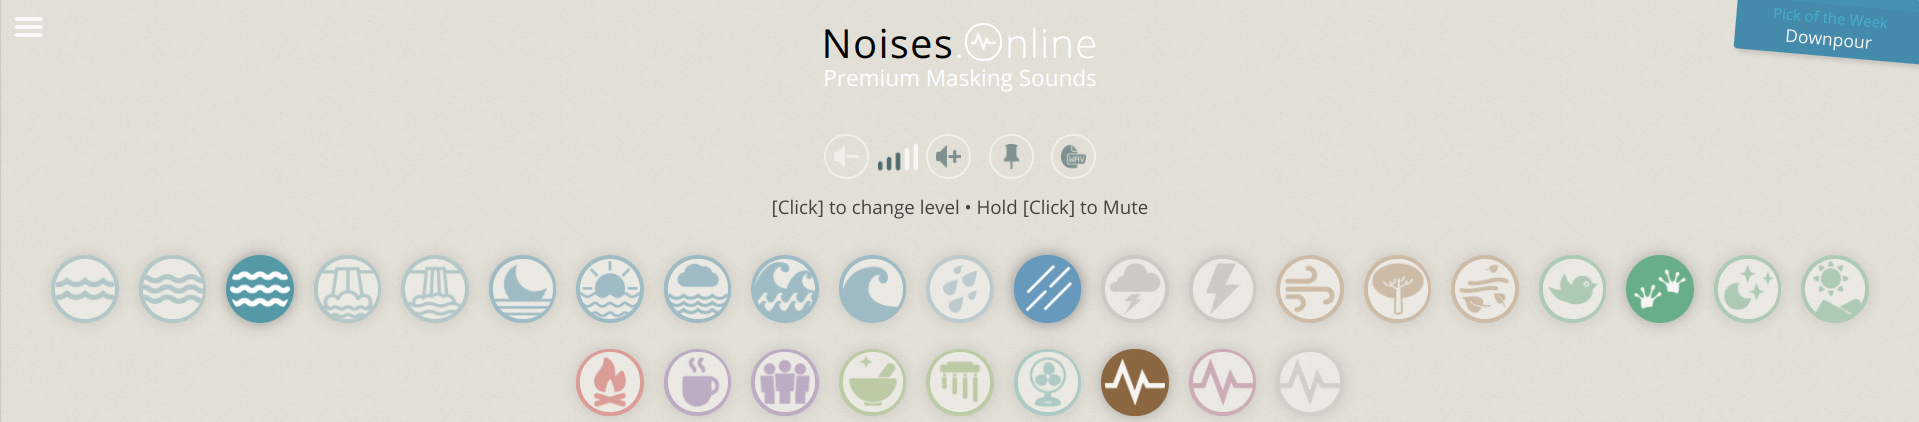 noises online - Come migliorare la concentrazione con un cocktail audio